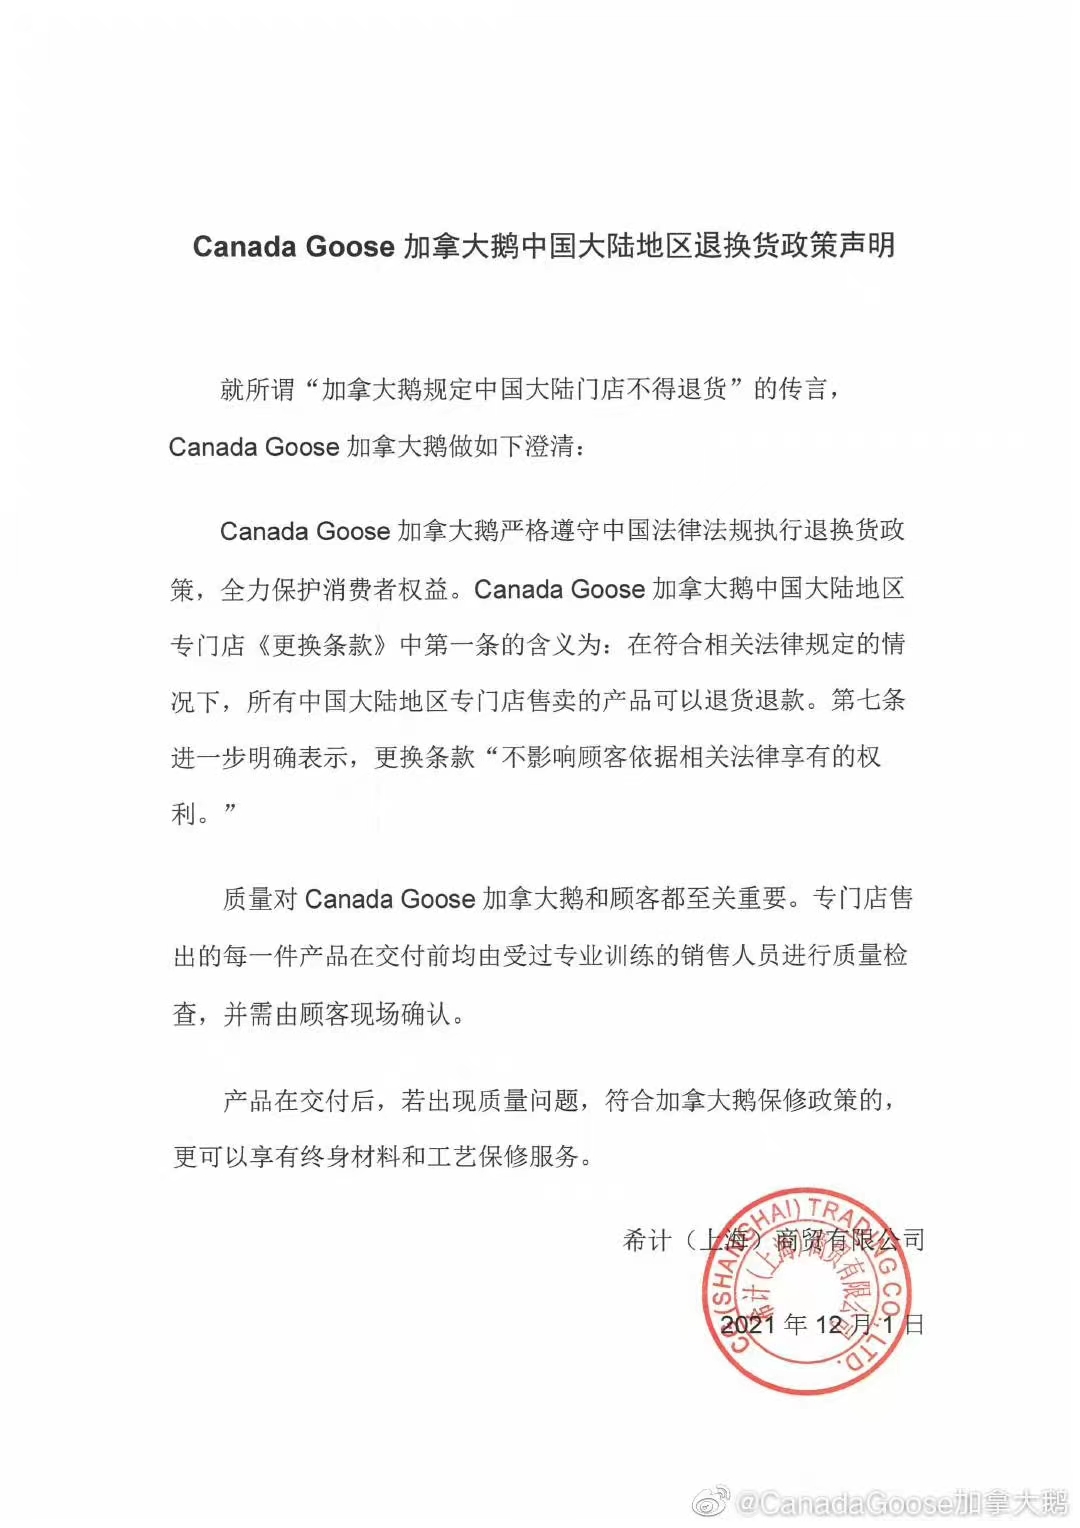 Canada Goose加拿大鹅中国大陆地区退换货政策申明